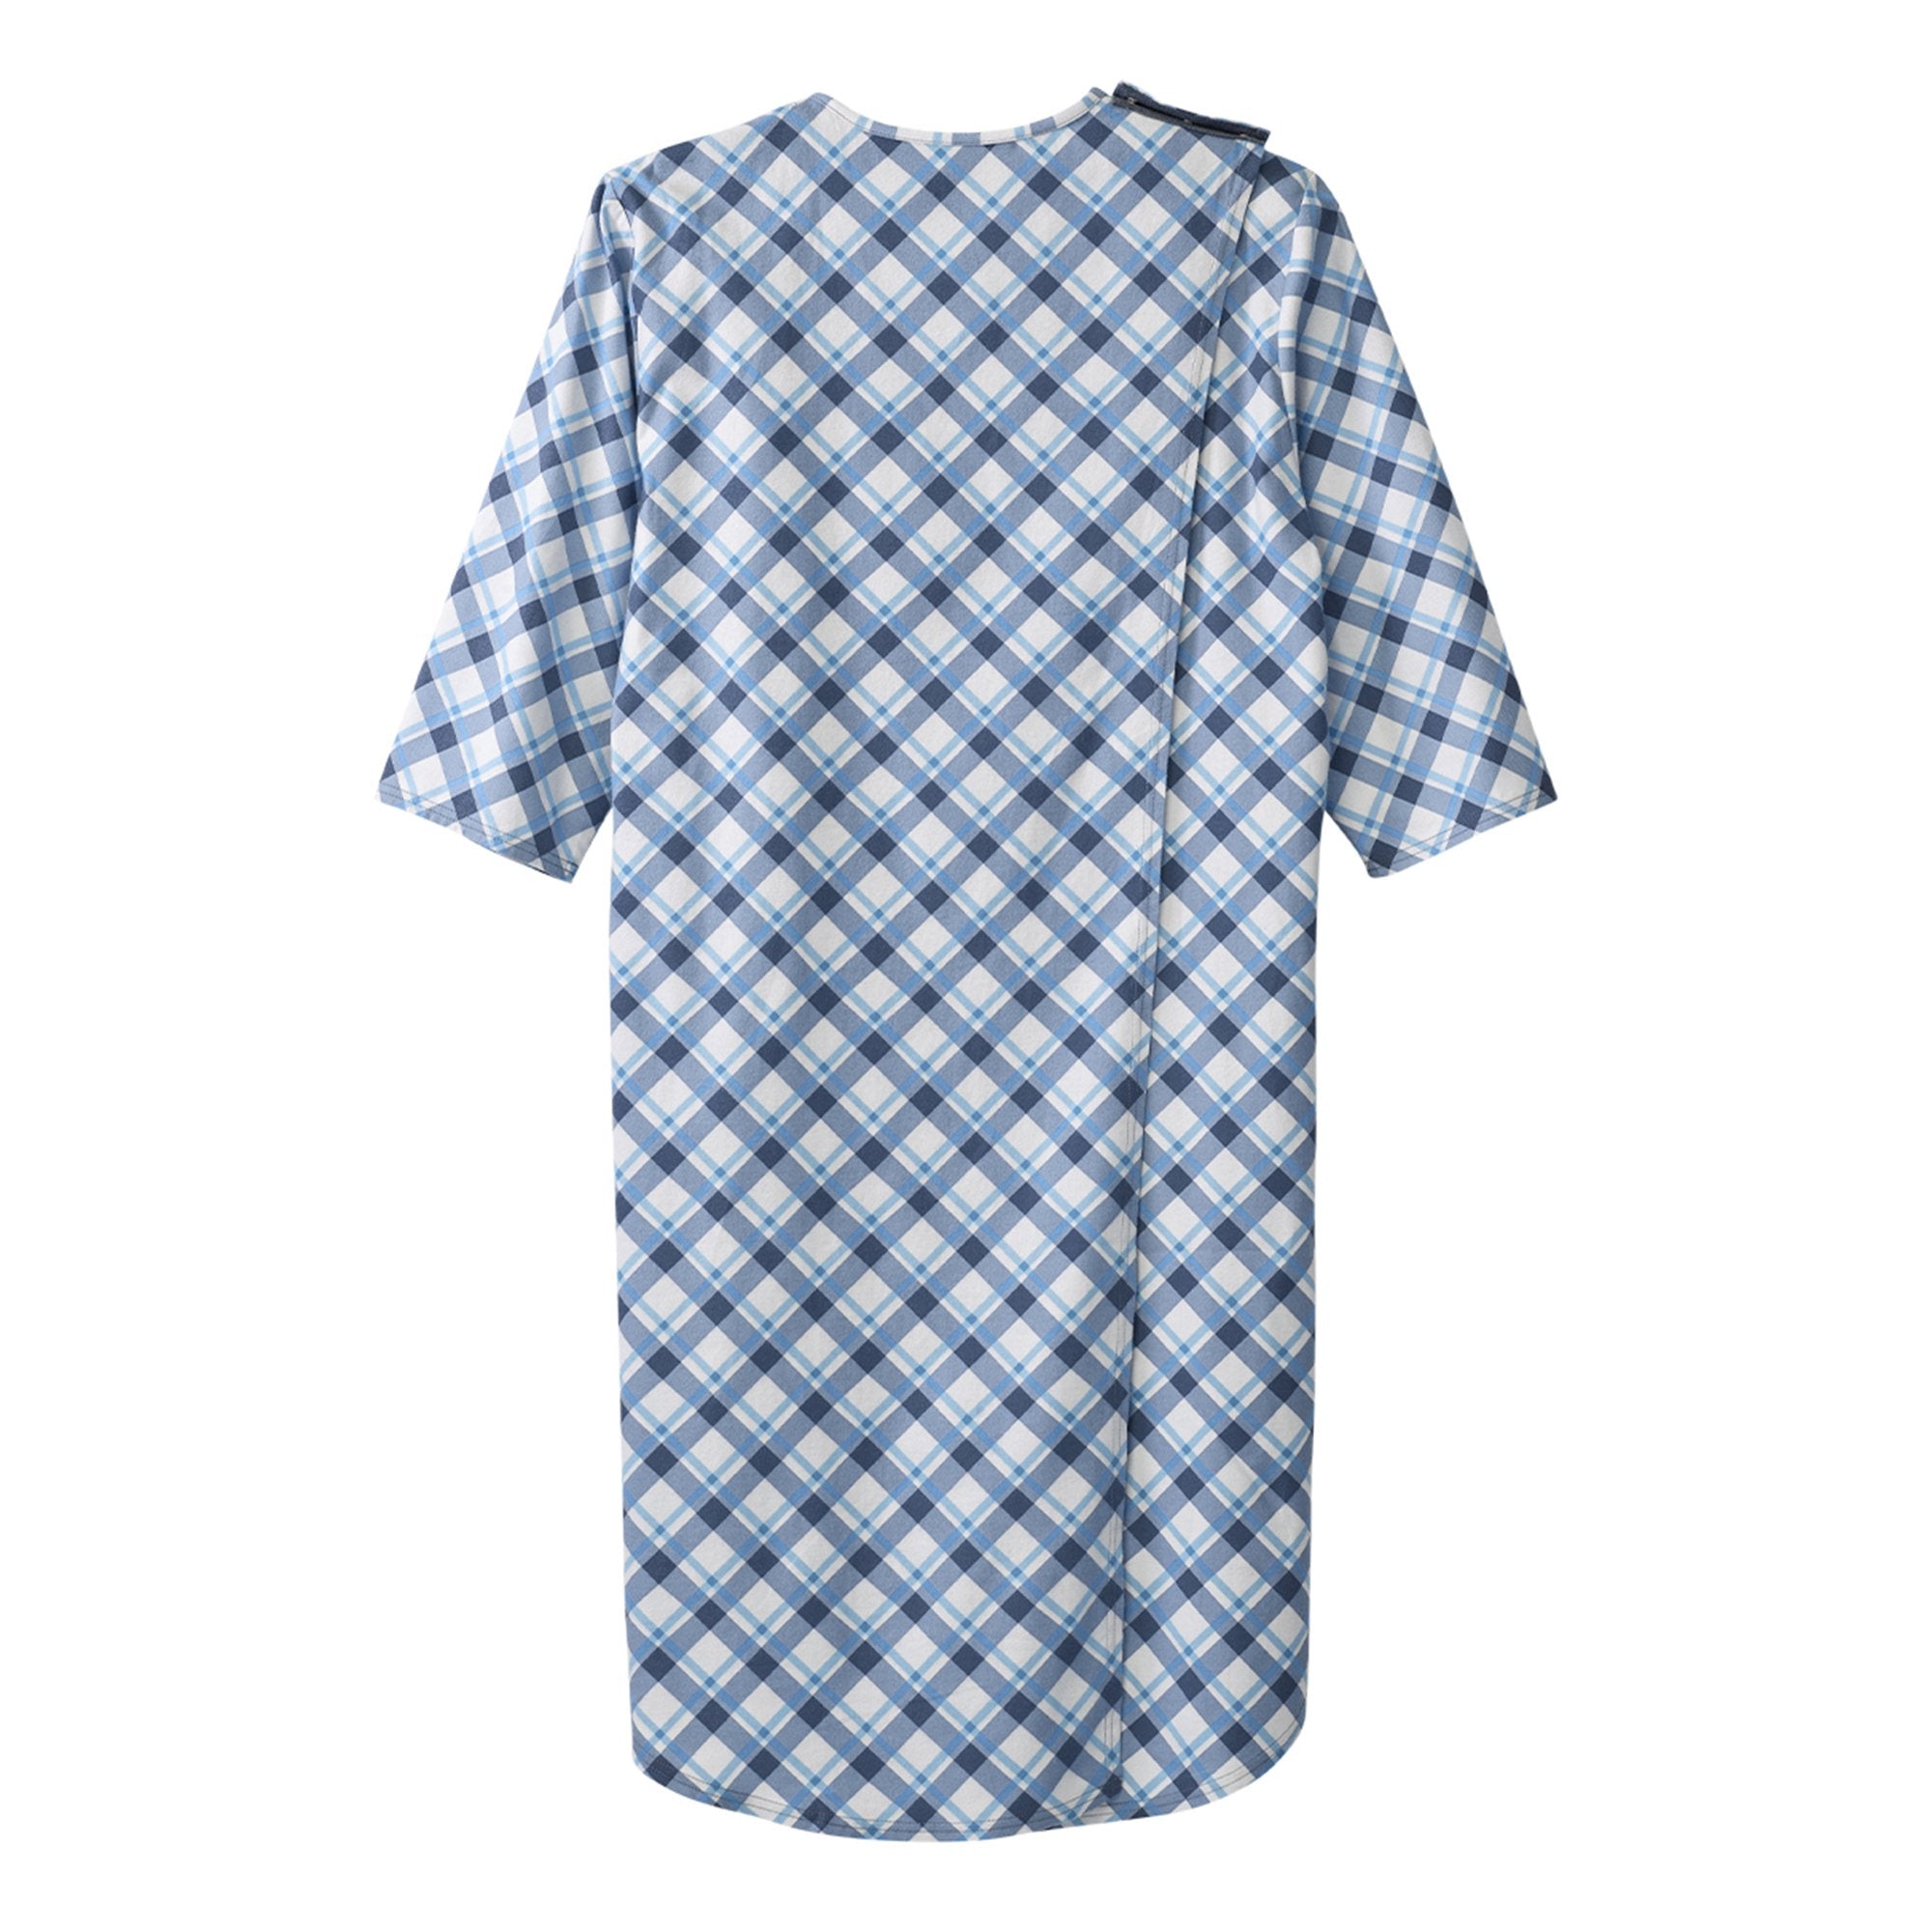 Silverts® Shoulder Snap Patient Exam Gown, 2X-Large, Diagonal Blue Plaid (1 Unit)